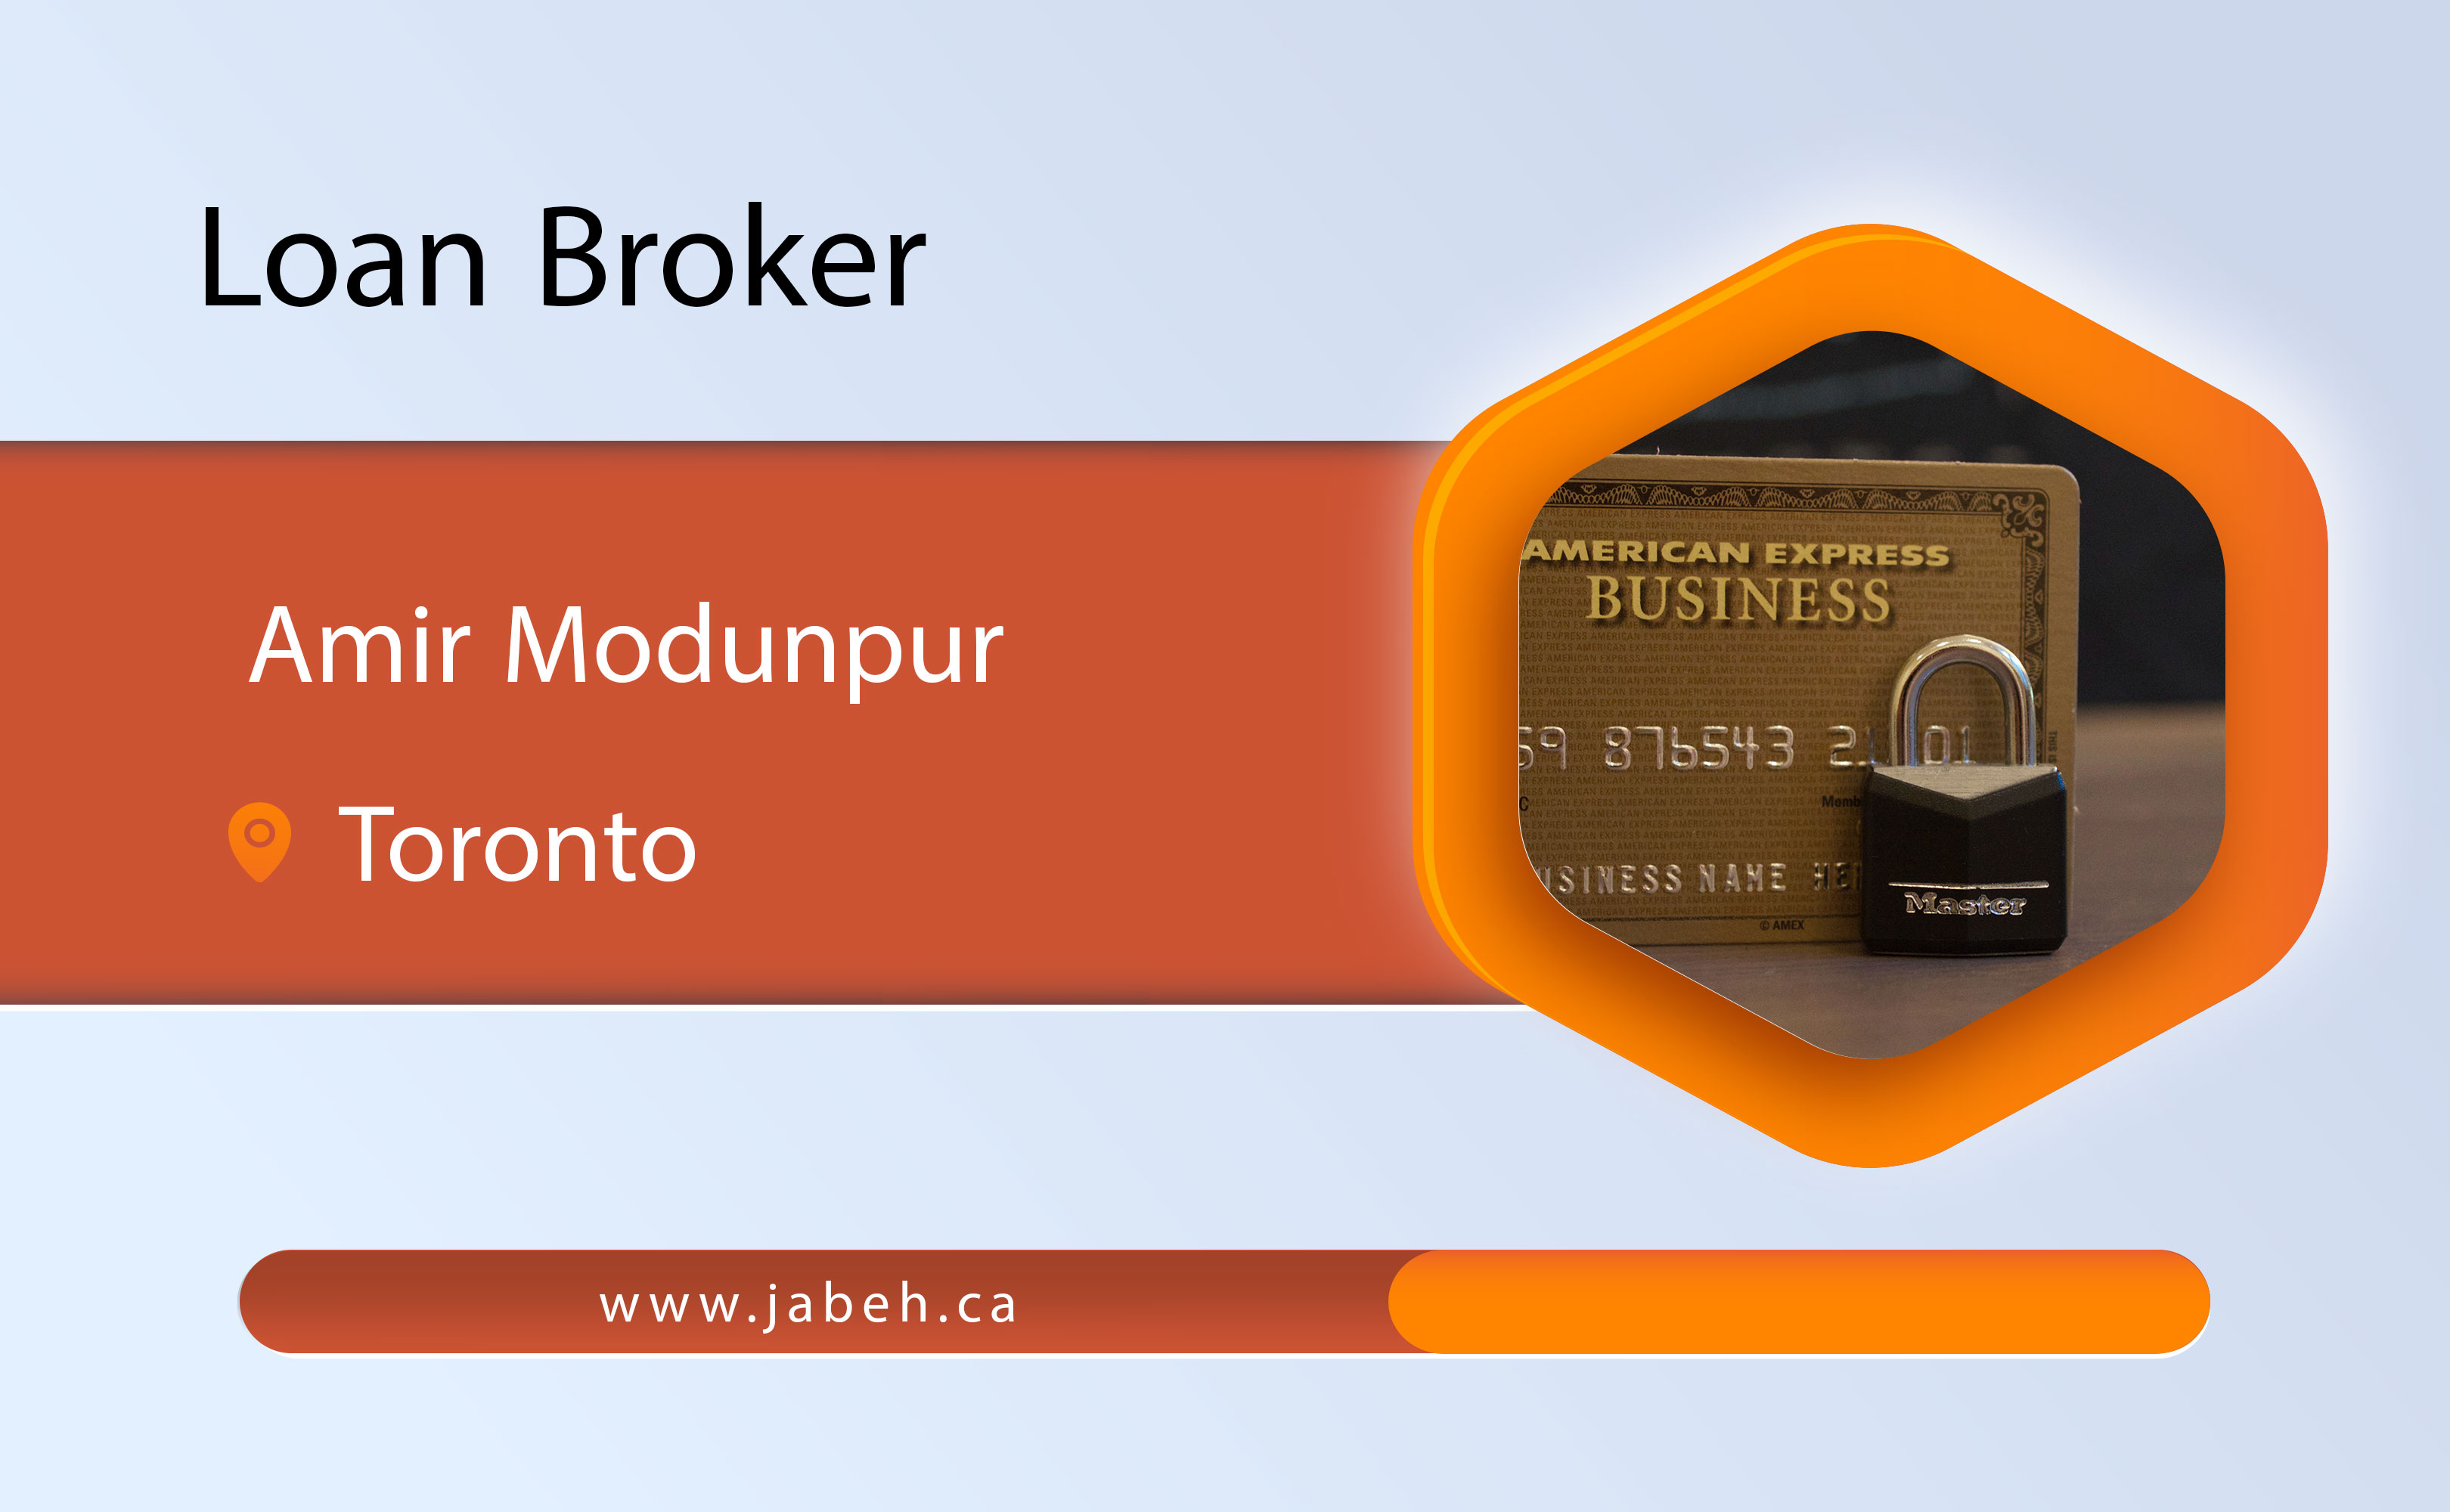 Amir Modonpour loan broker in Toronto